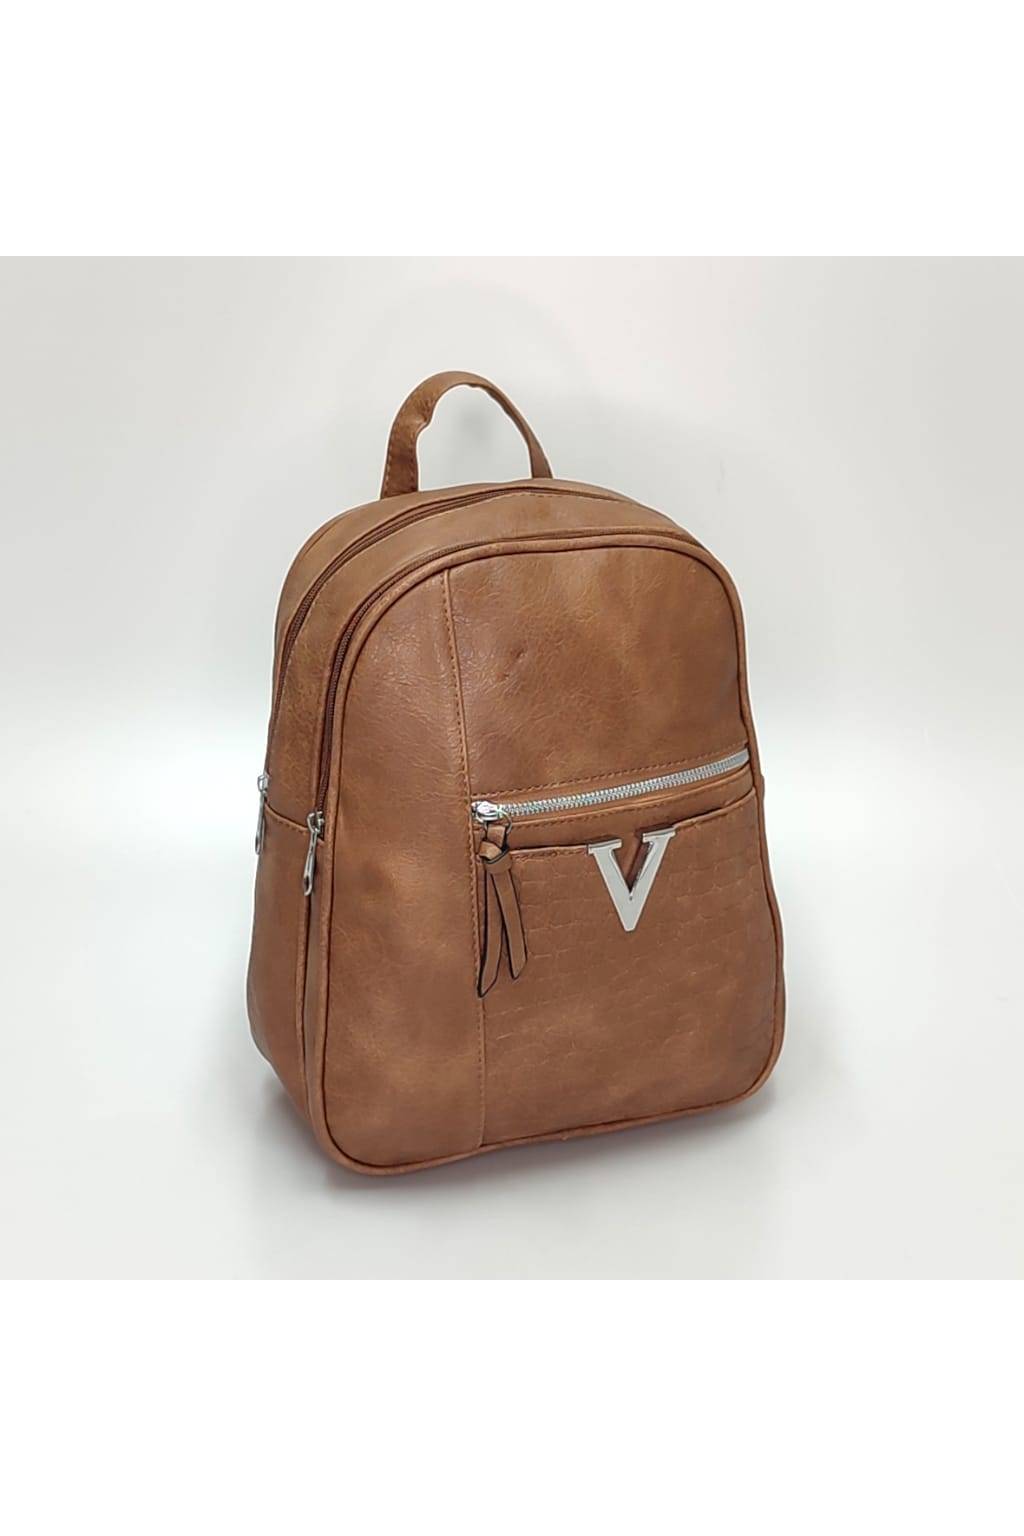 Dámsky ruksak 6032 tmavo béžový www.kabelky vypredaj (1)